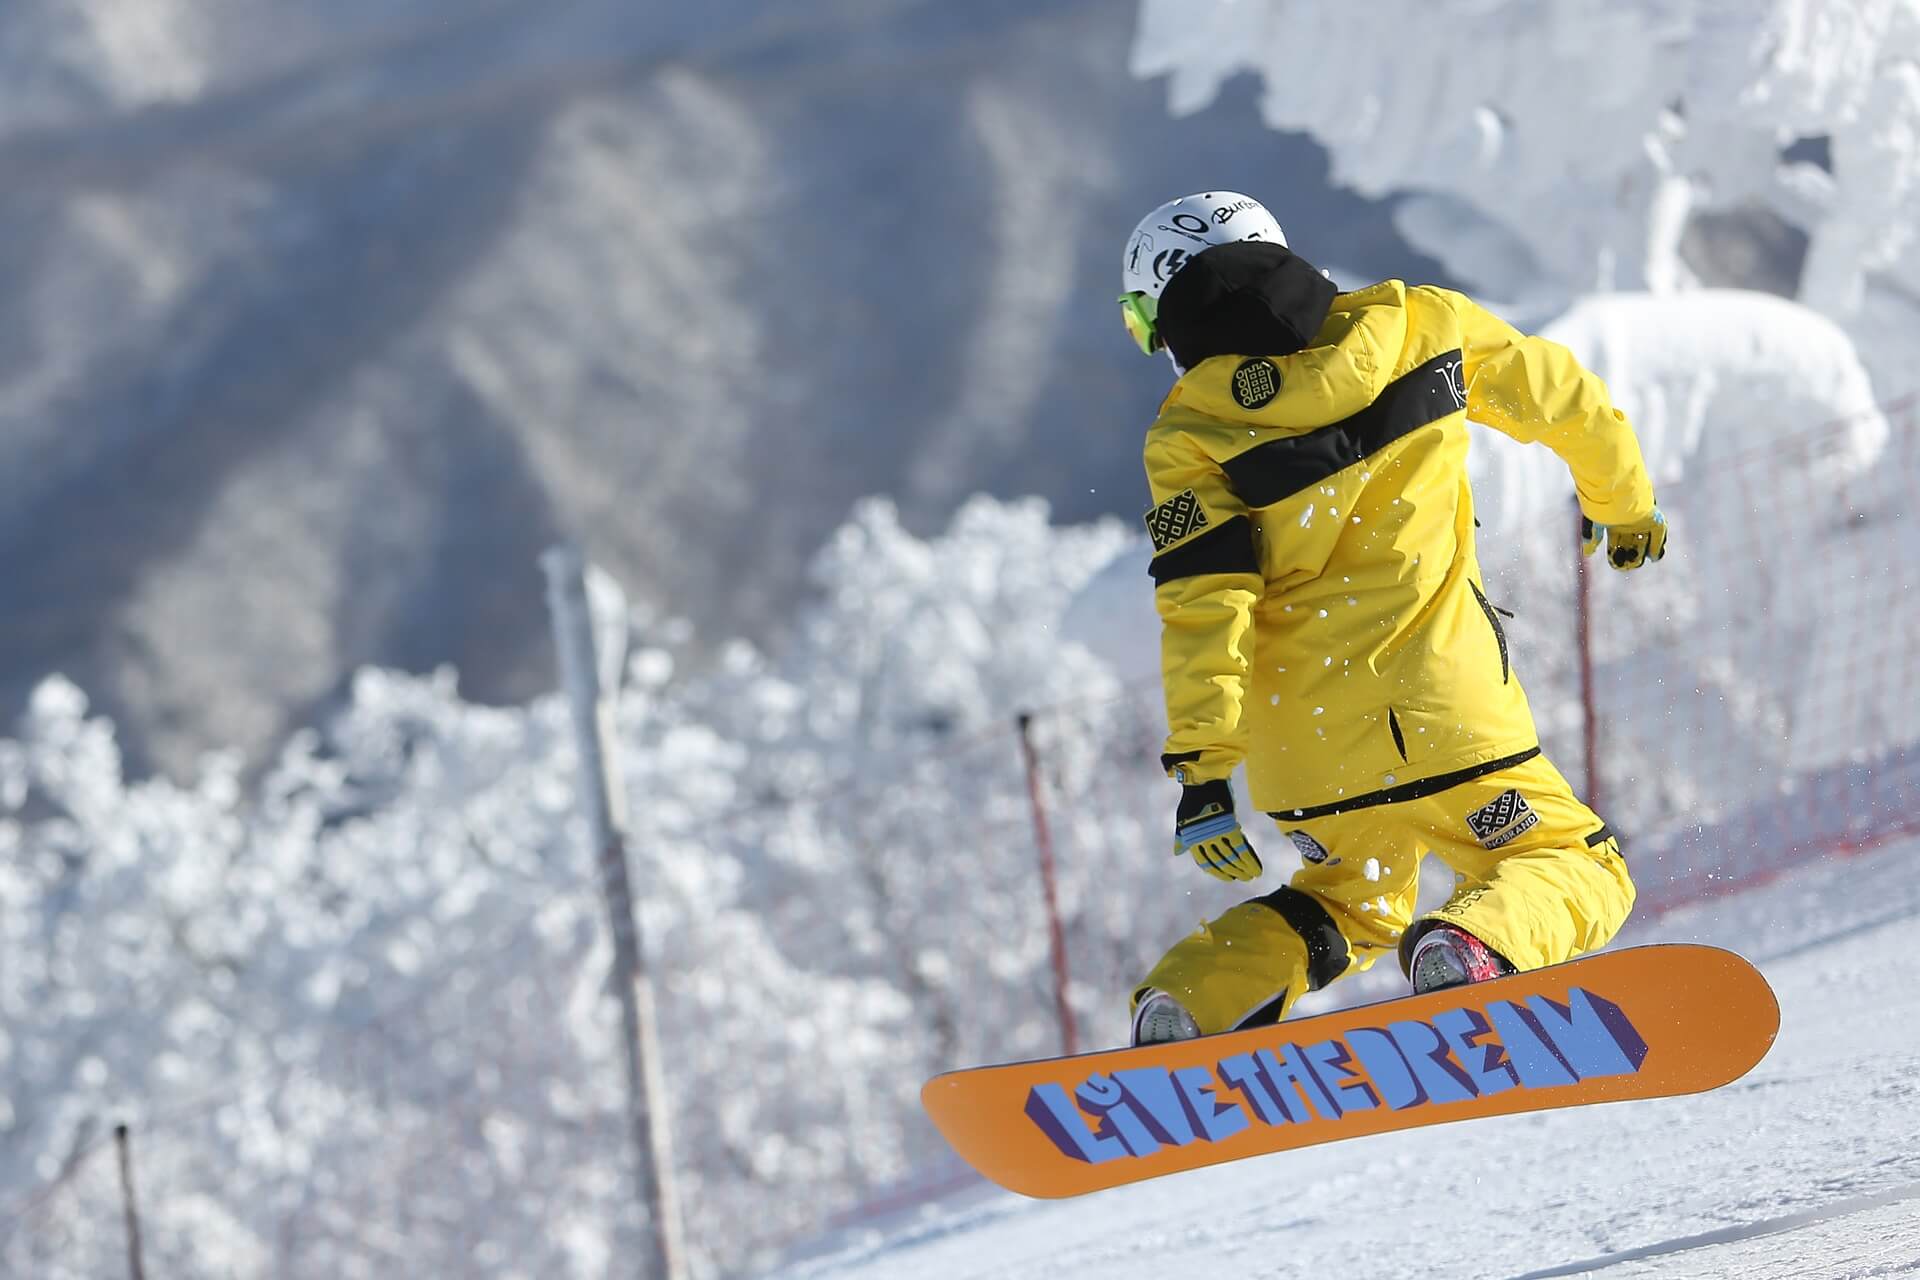 スノボインナーの選び方 防寒対策からおしゃれまでオススメを紹介 スキー スノーボード情報メディア Grab グラブ